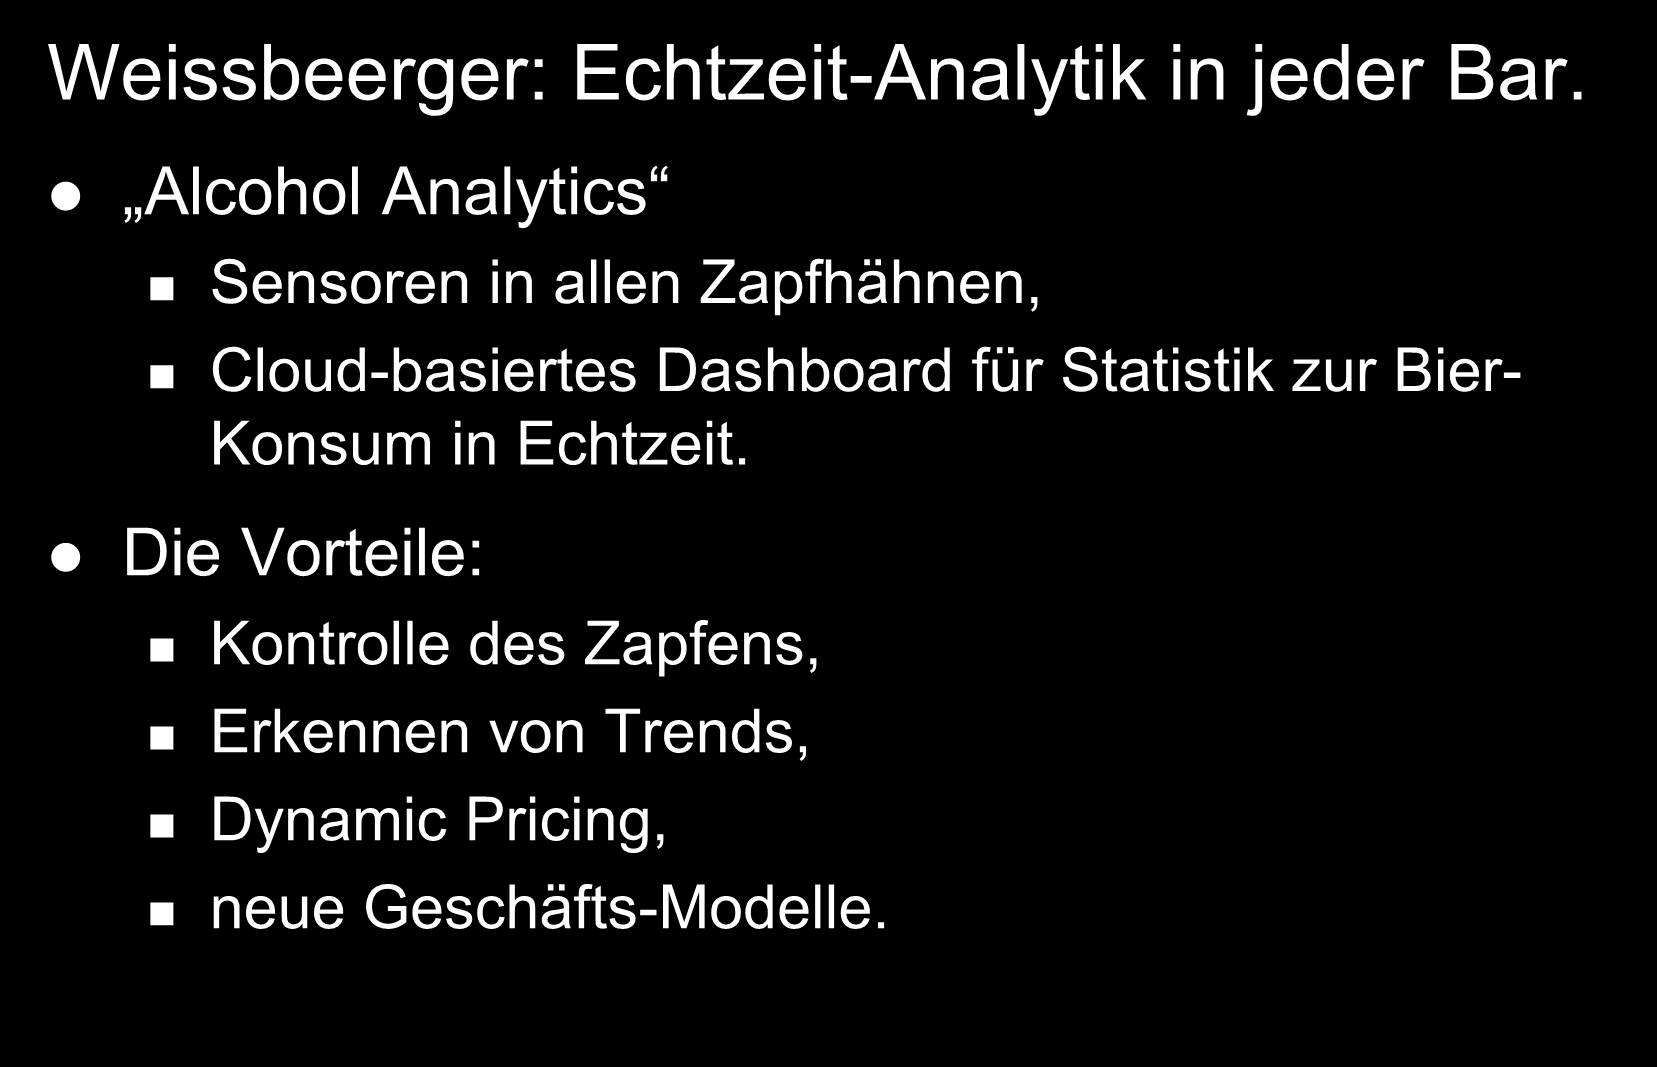 Kunden- und Marktwissen umsetzen Ein Beispiel als Denkanstoß: Weissbeerger: Echtzeit-Analytik in jeder Bar.